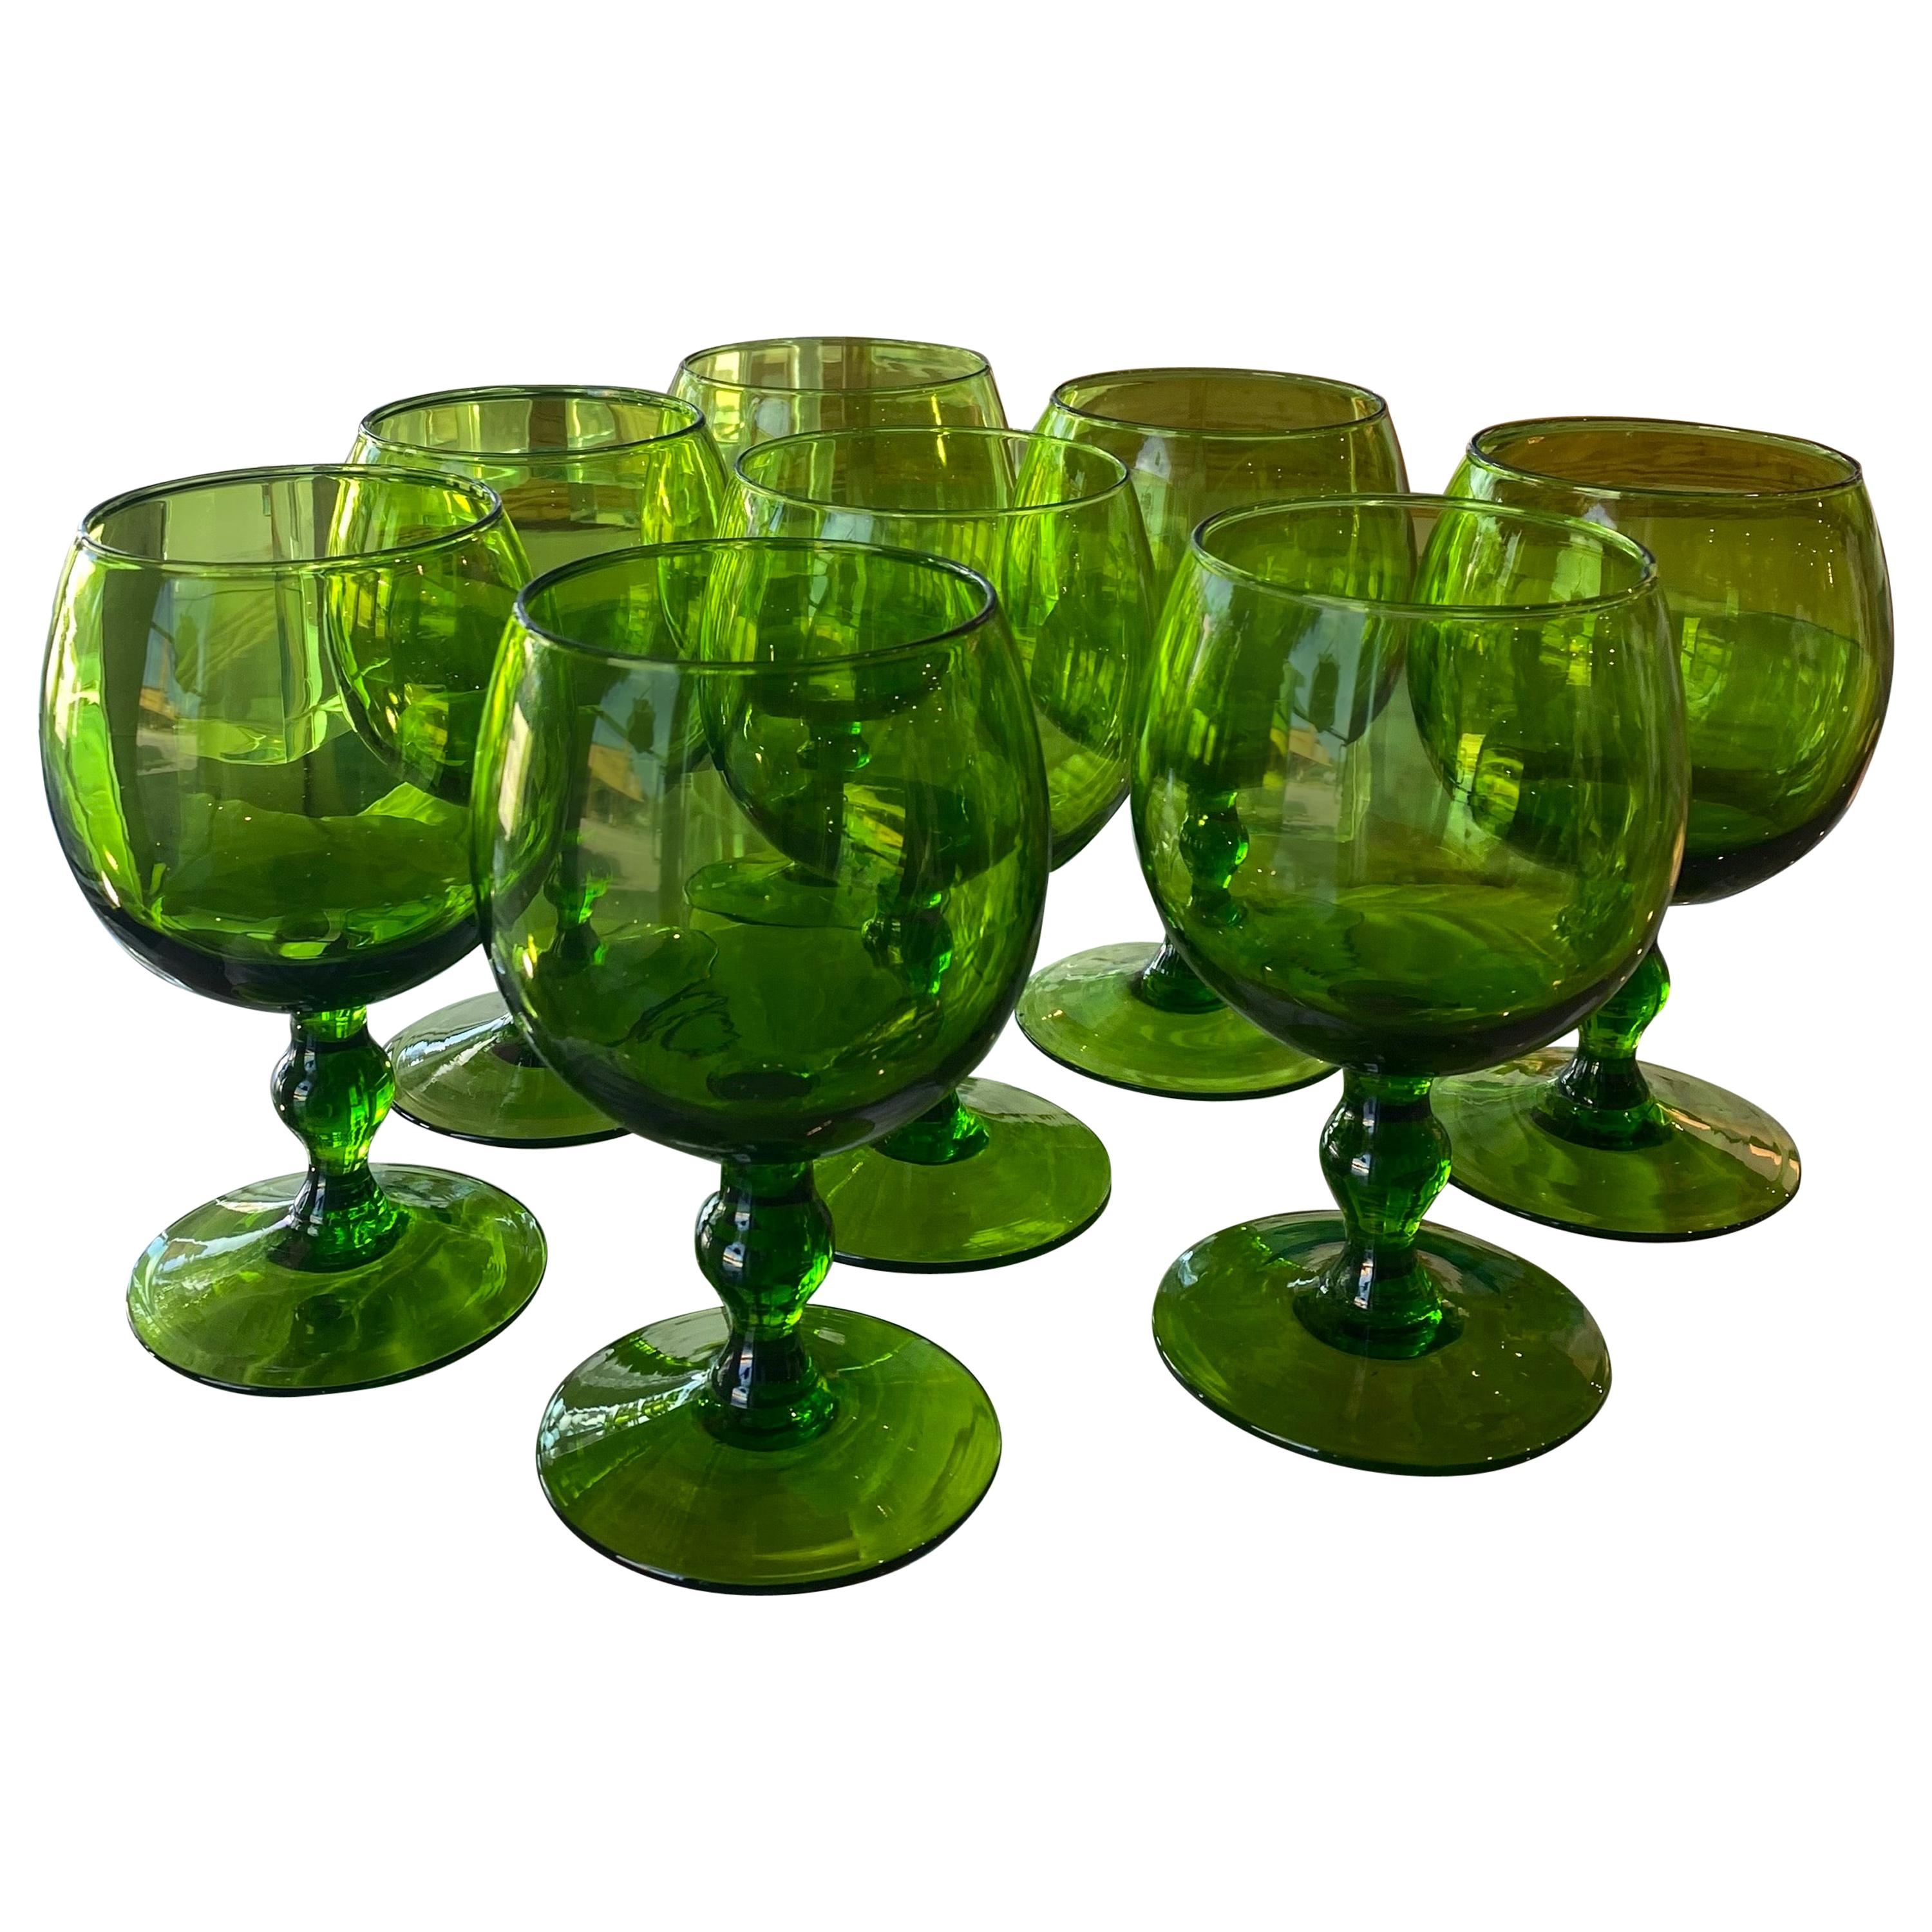 https://a.1stdibscdn.com/vintage-green-glass-wine-glasses-set-of-8-for-sale/1121189/f_211319721603536659969/21131972_master.jpg